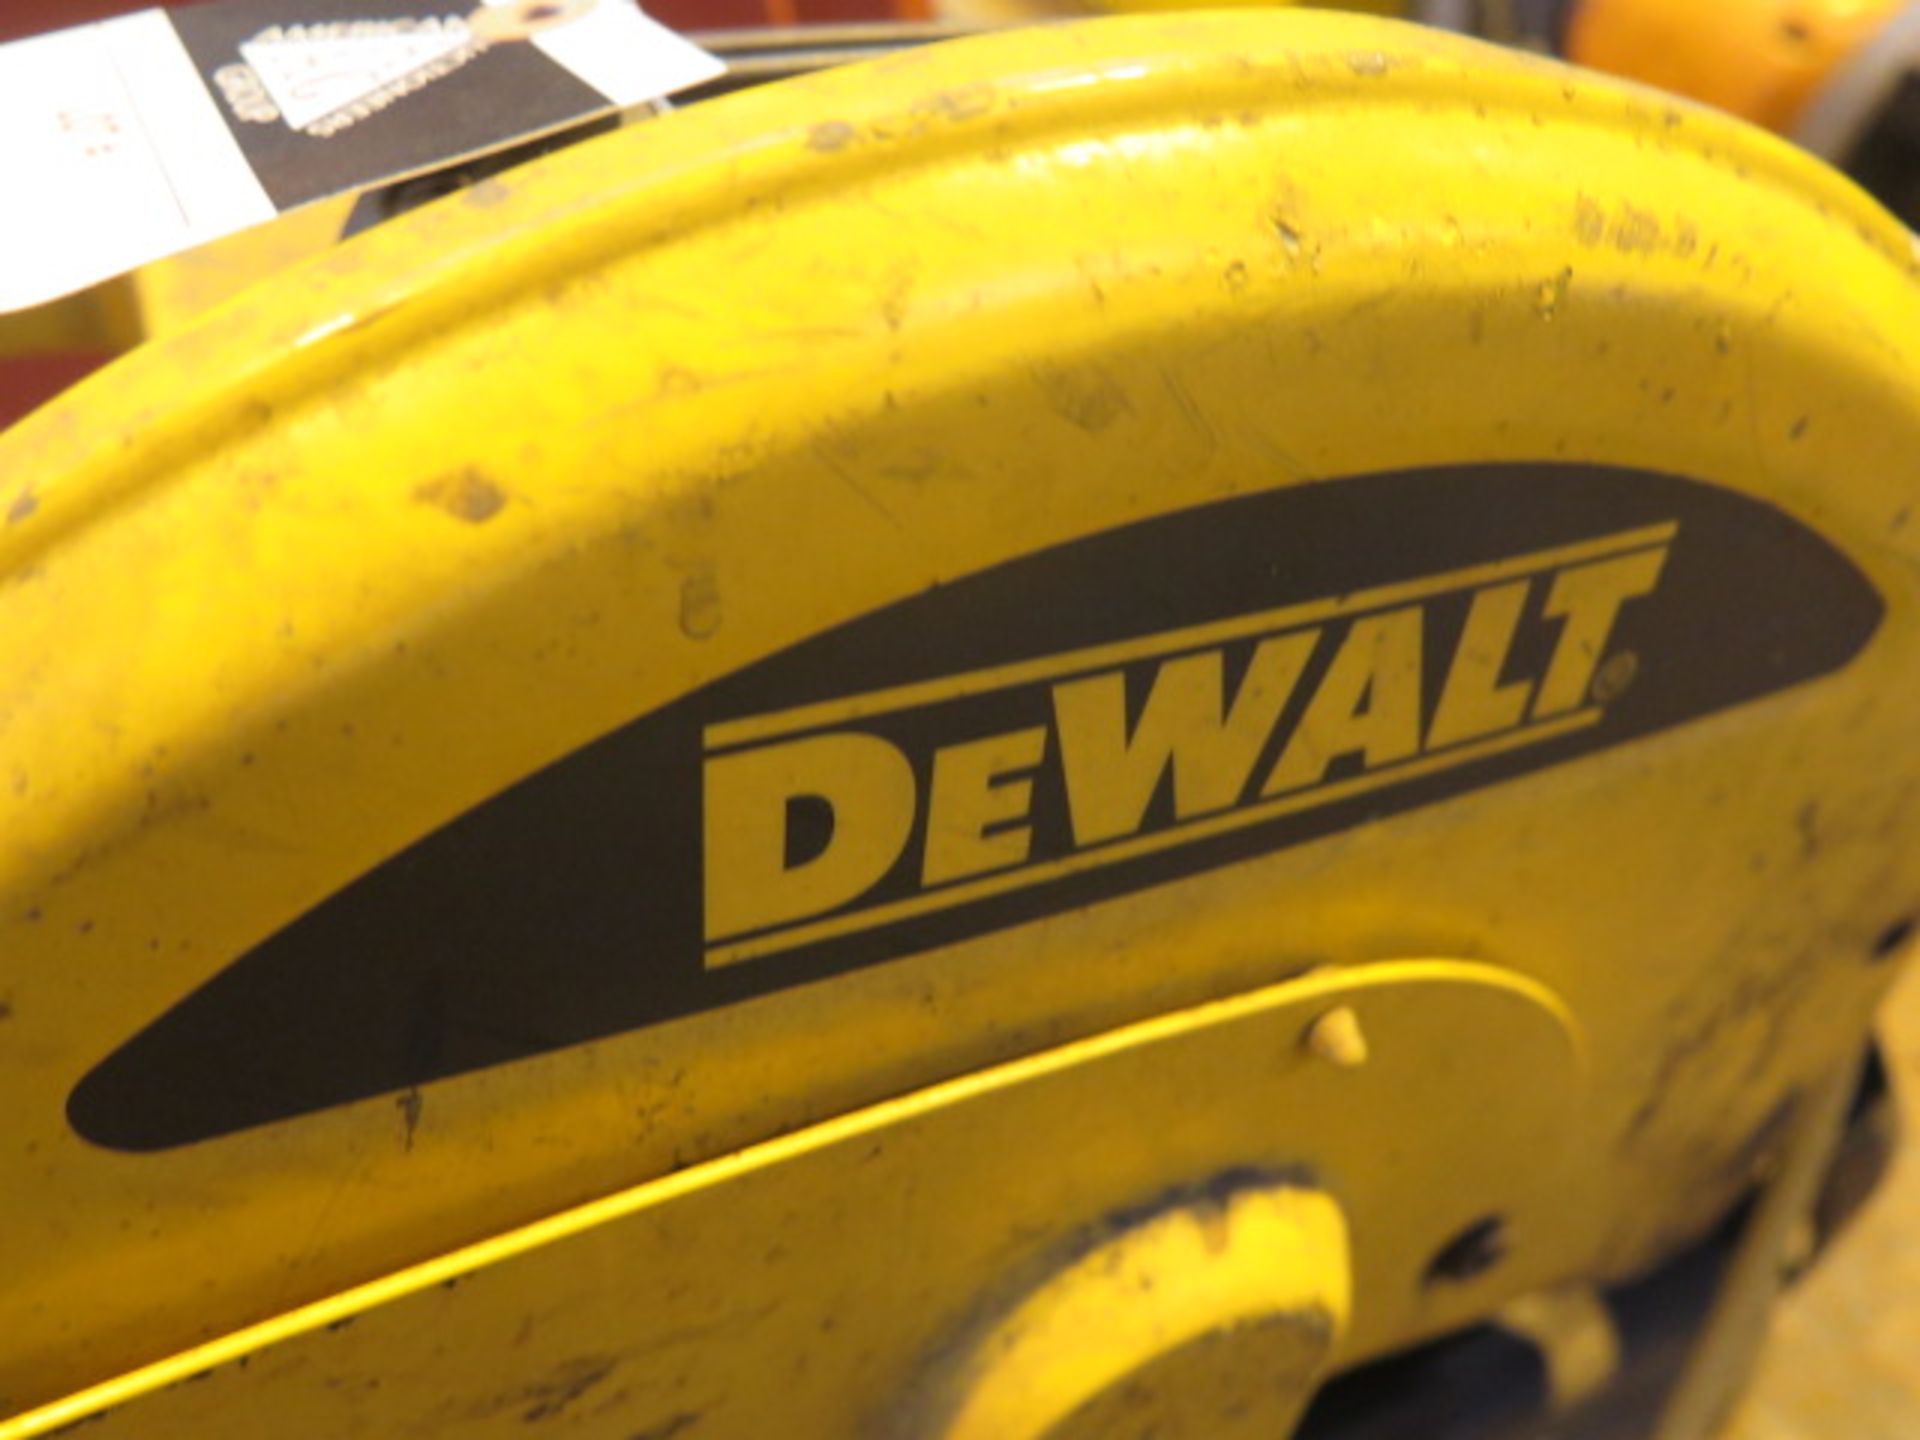 DeWalt 14” Abrasive Cutoff Saw - Image 3 of 3